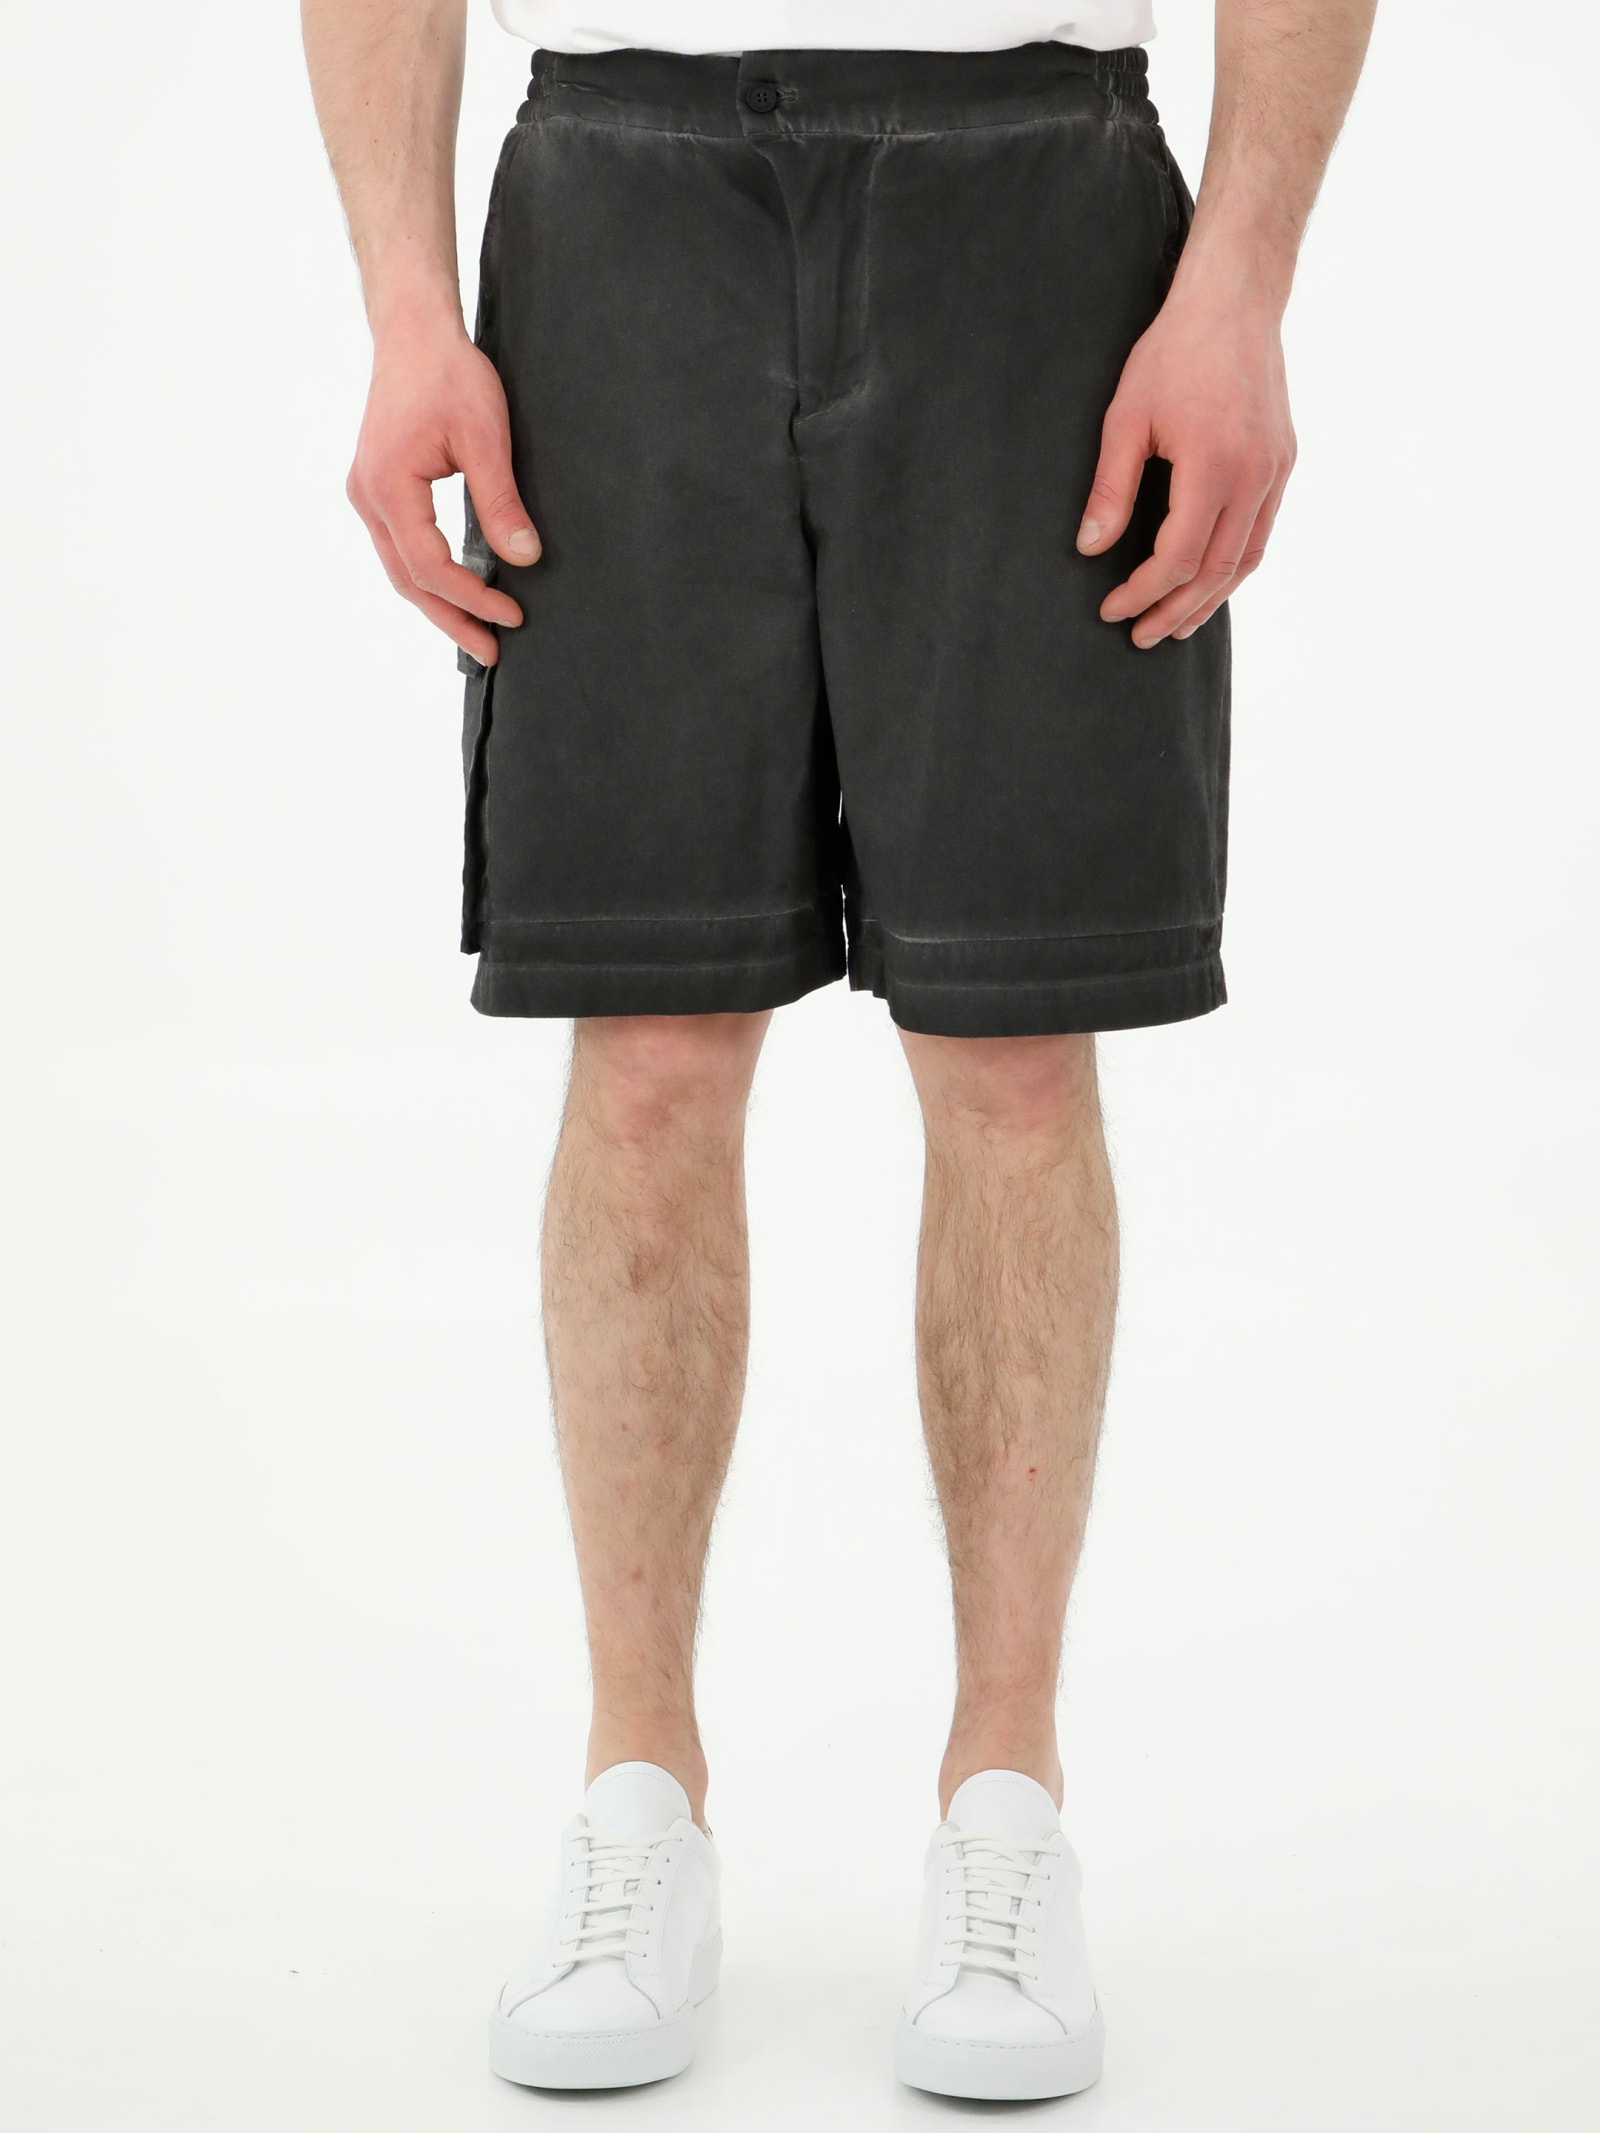 A-COLD-WALL Density Black Bermuda Shorts